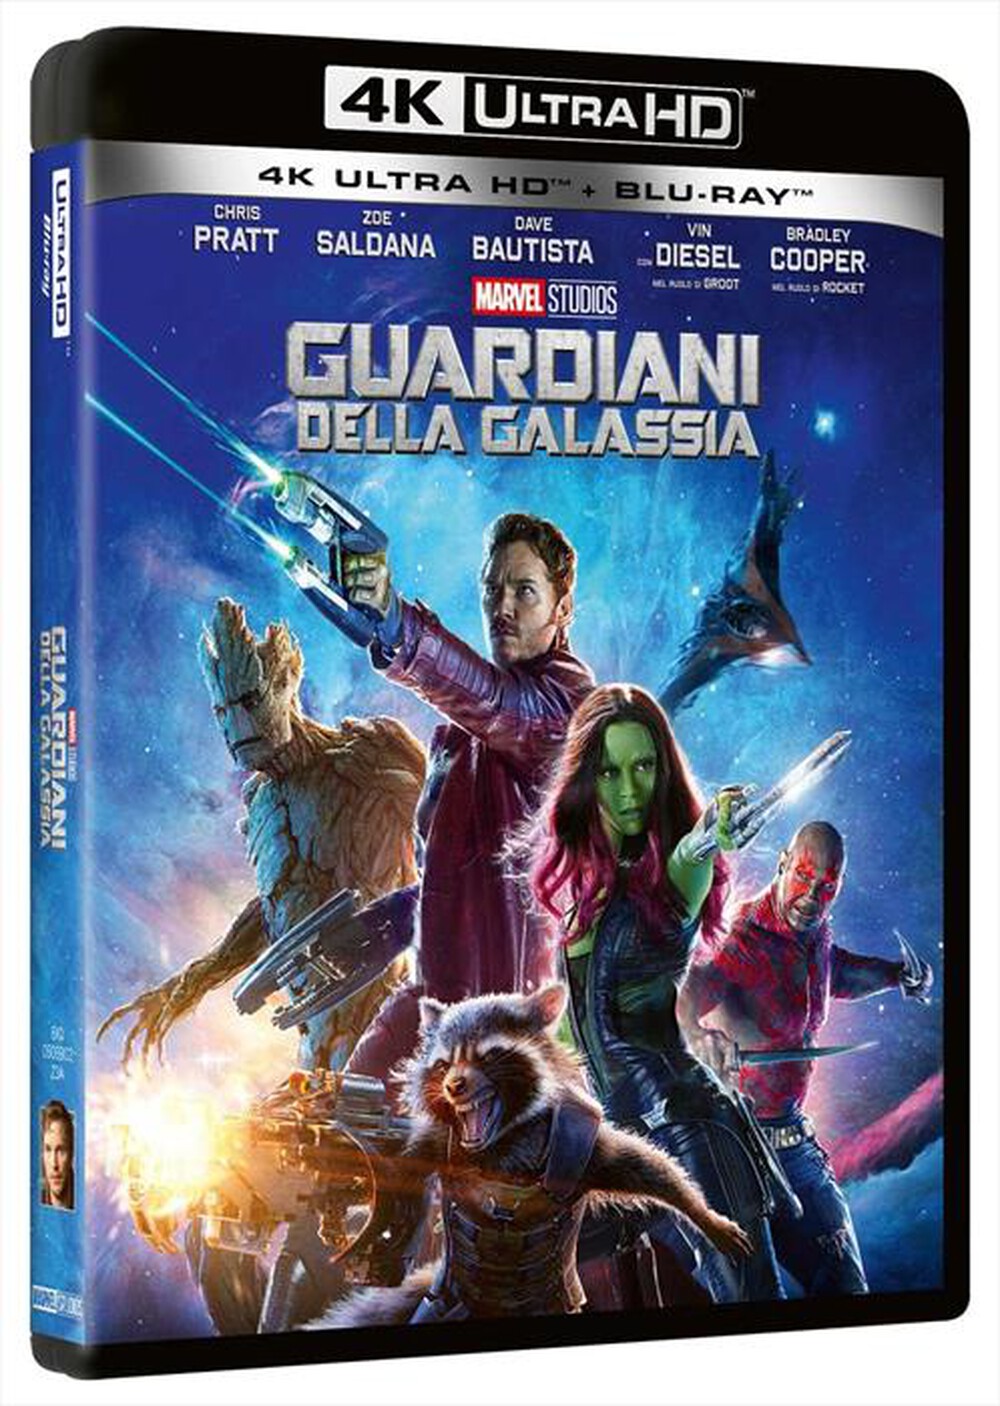 "EAGLE PICTURES - Guardiani Della Galassia (4K Ultra Hd+Blu-Ray)"